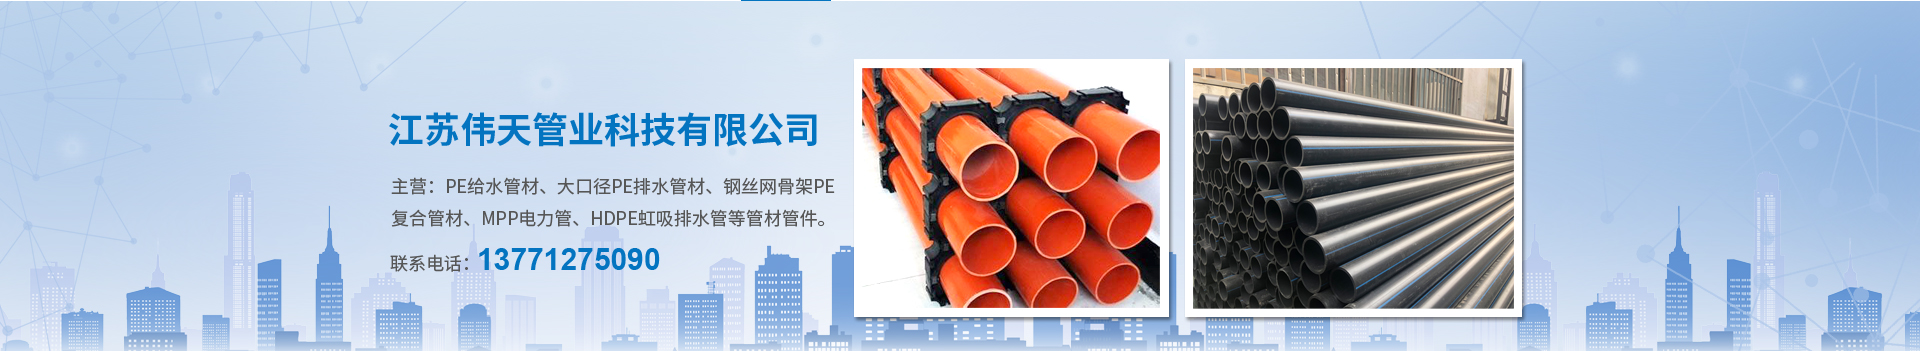 电熔管件-江苏伟天管业科技有限公司